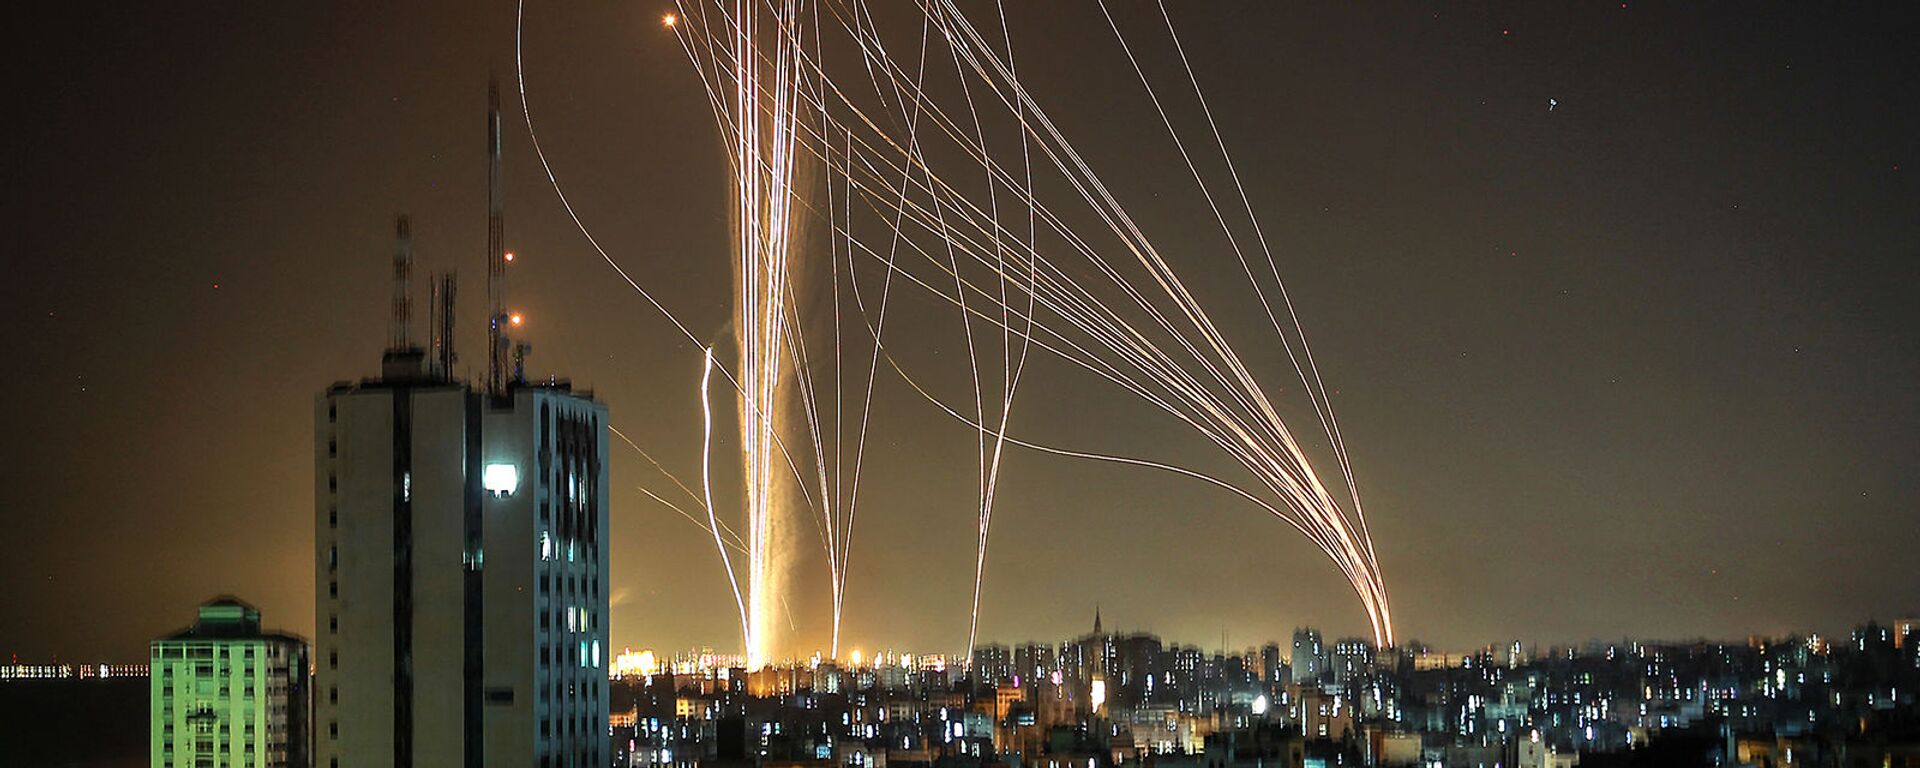 Ракеты запускаются из города Газа, контролируемого палестинским движением ХАМАС, в направлении прибрежного города Тель-Авив (11 мая 2021).  - Sputnik Армения, 1920, 13.05.2021